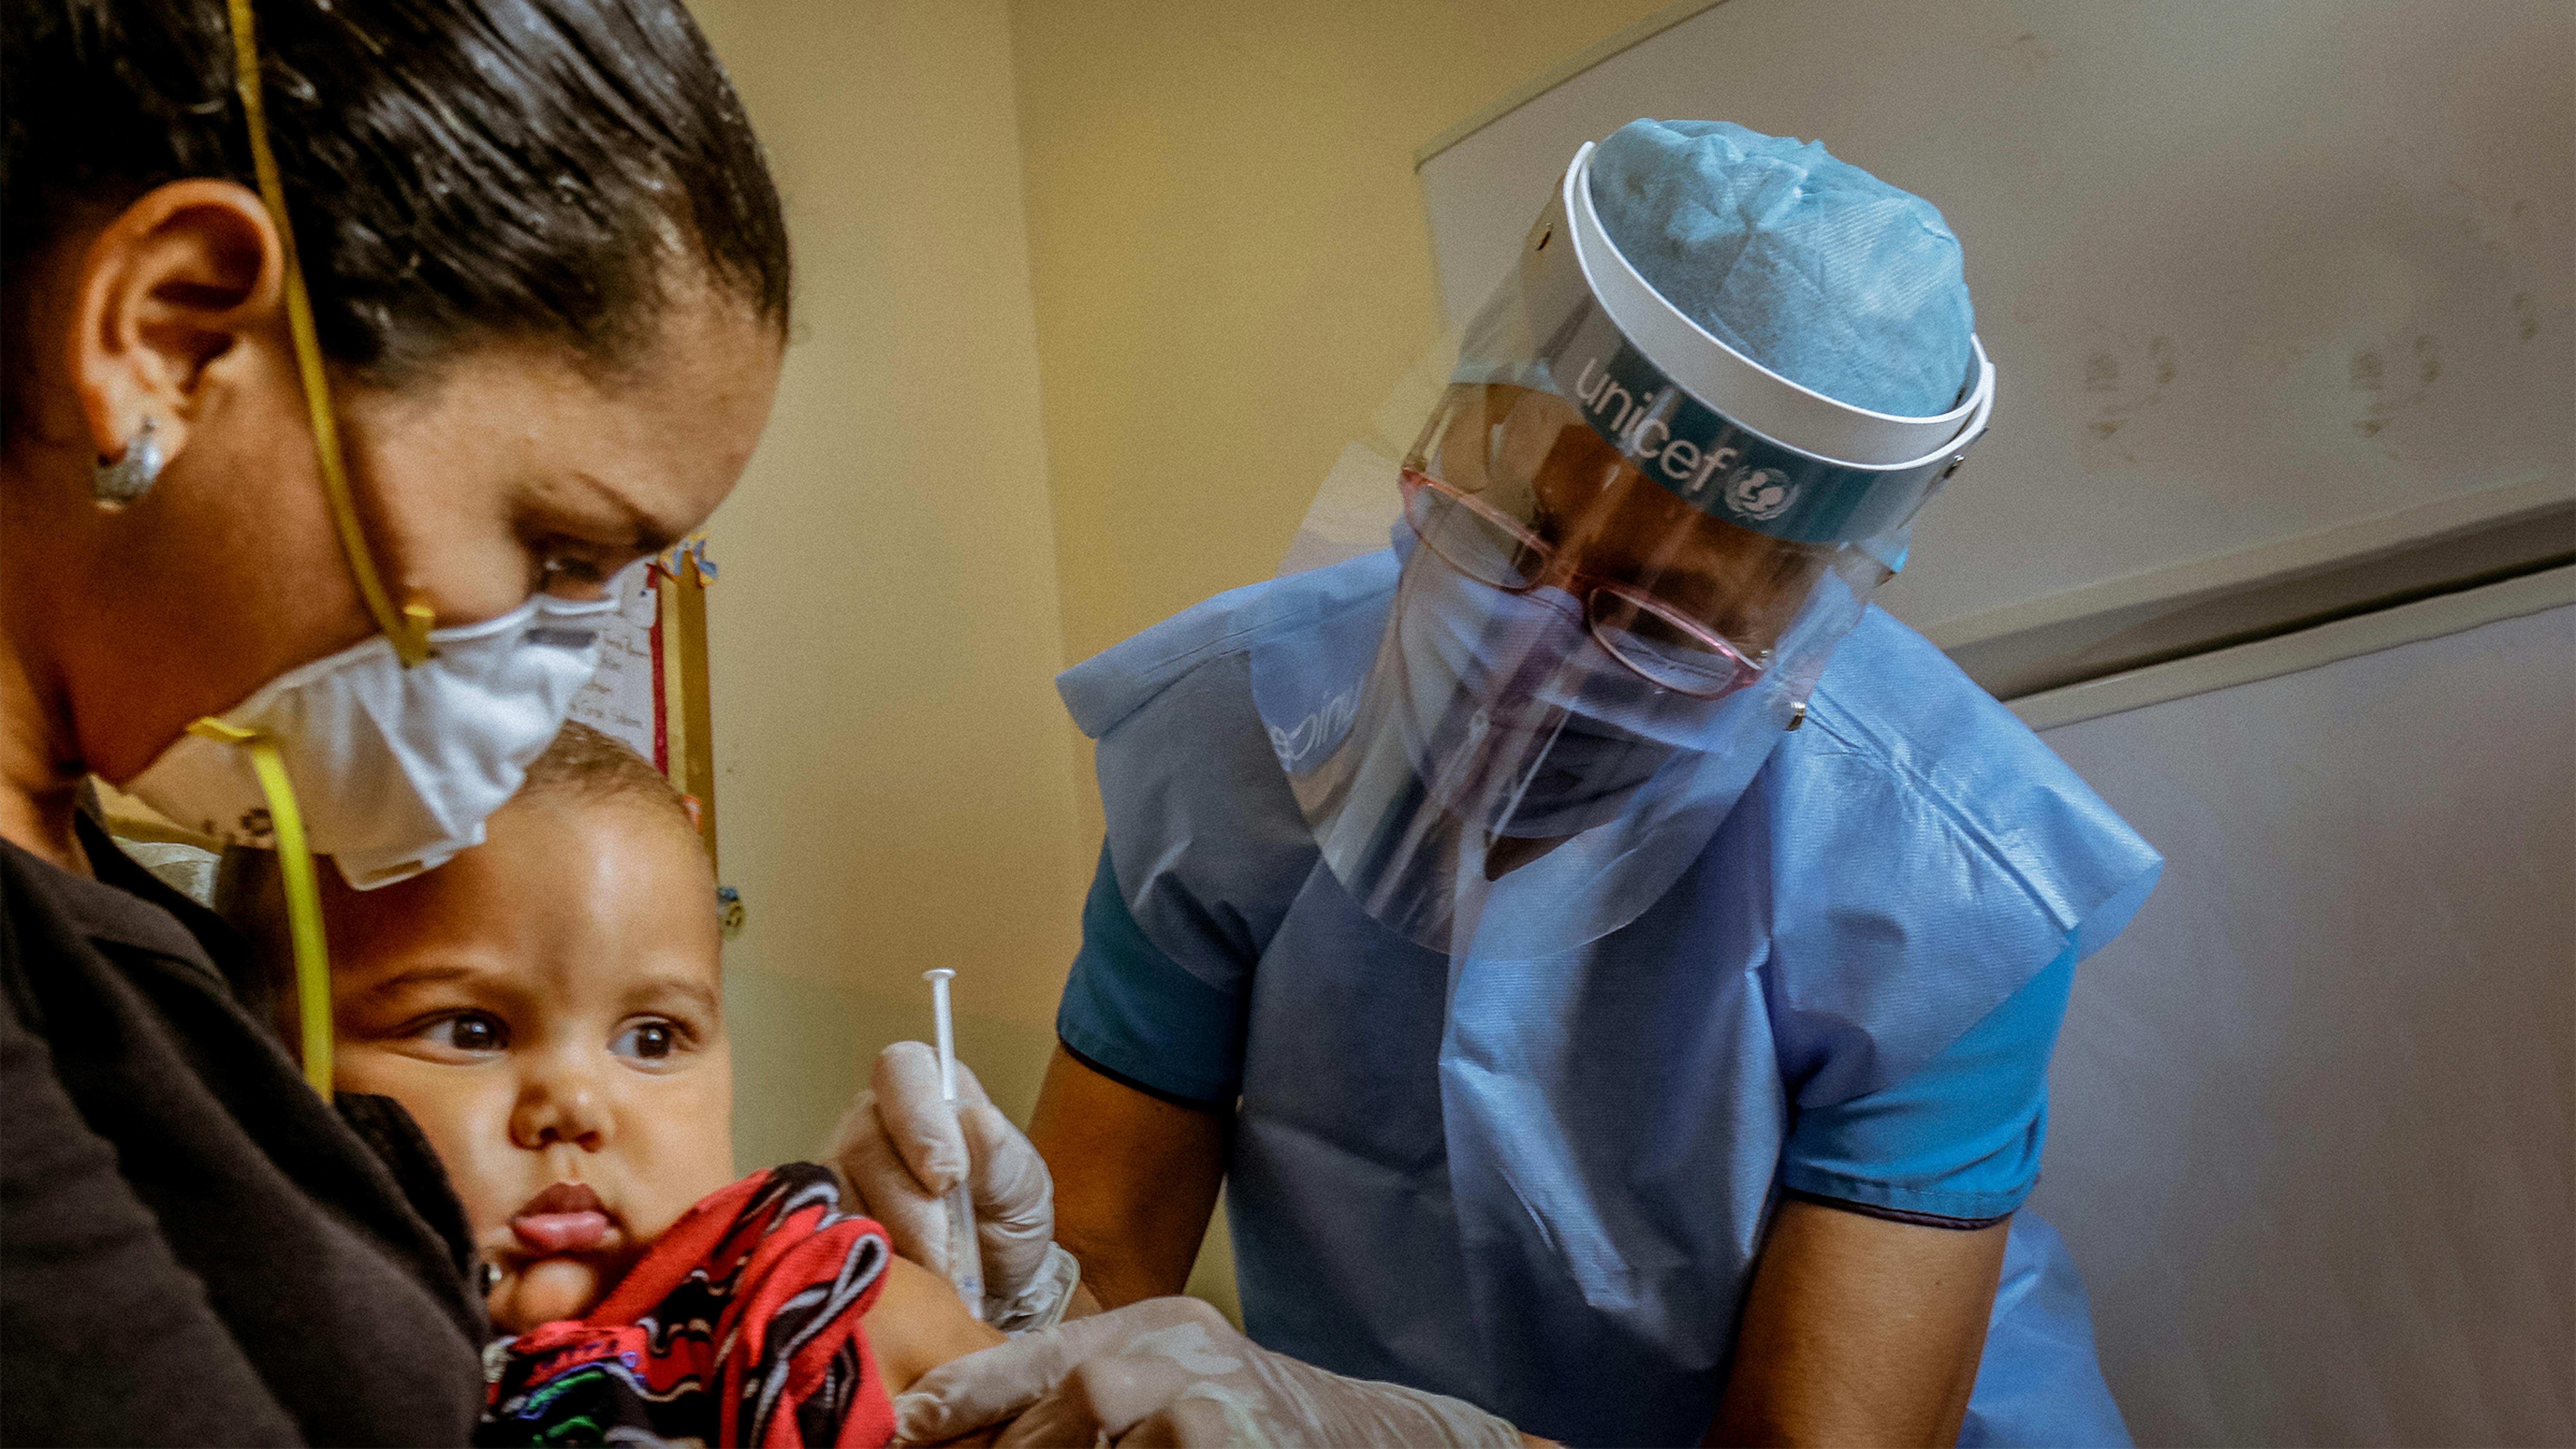 Bolivia, Marcelo, 1 anno, viene vaccinato in un centro sanitario nello stato di Bolivar dove l'UNICEF ha distribuito vaccini anti Polio, febbre gialla, tetano e tubercolosi